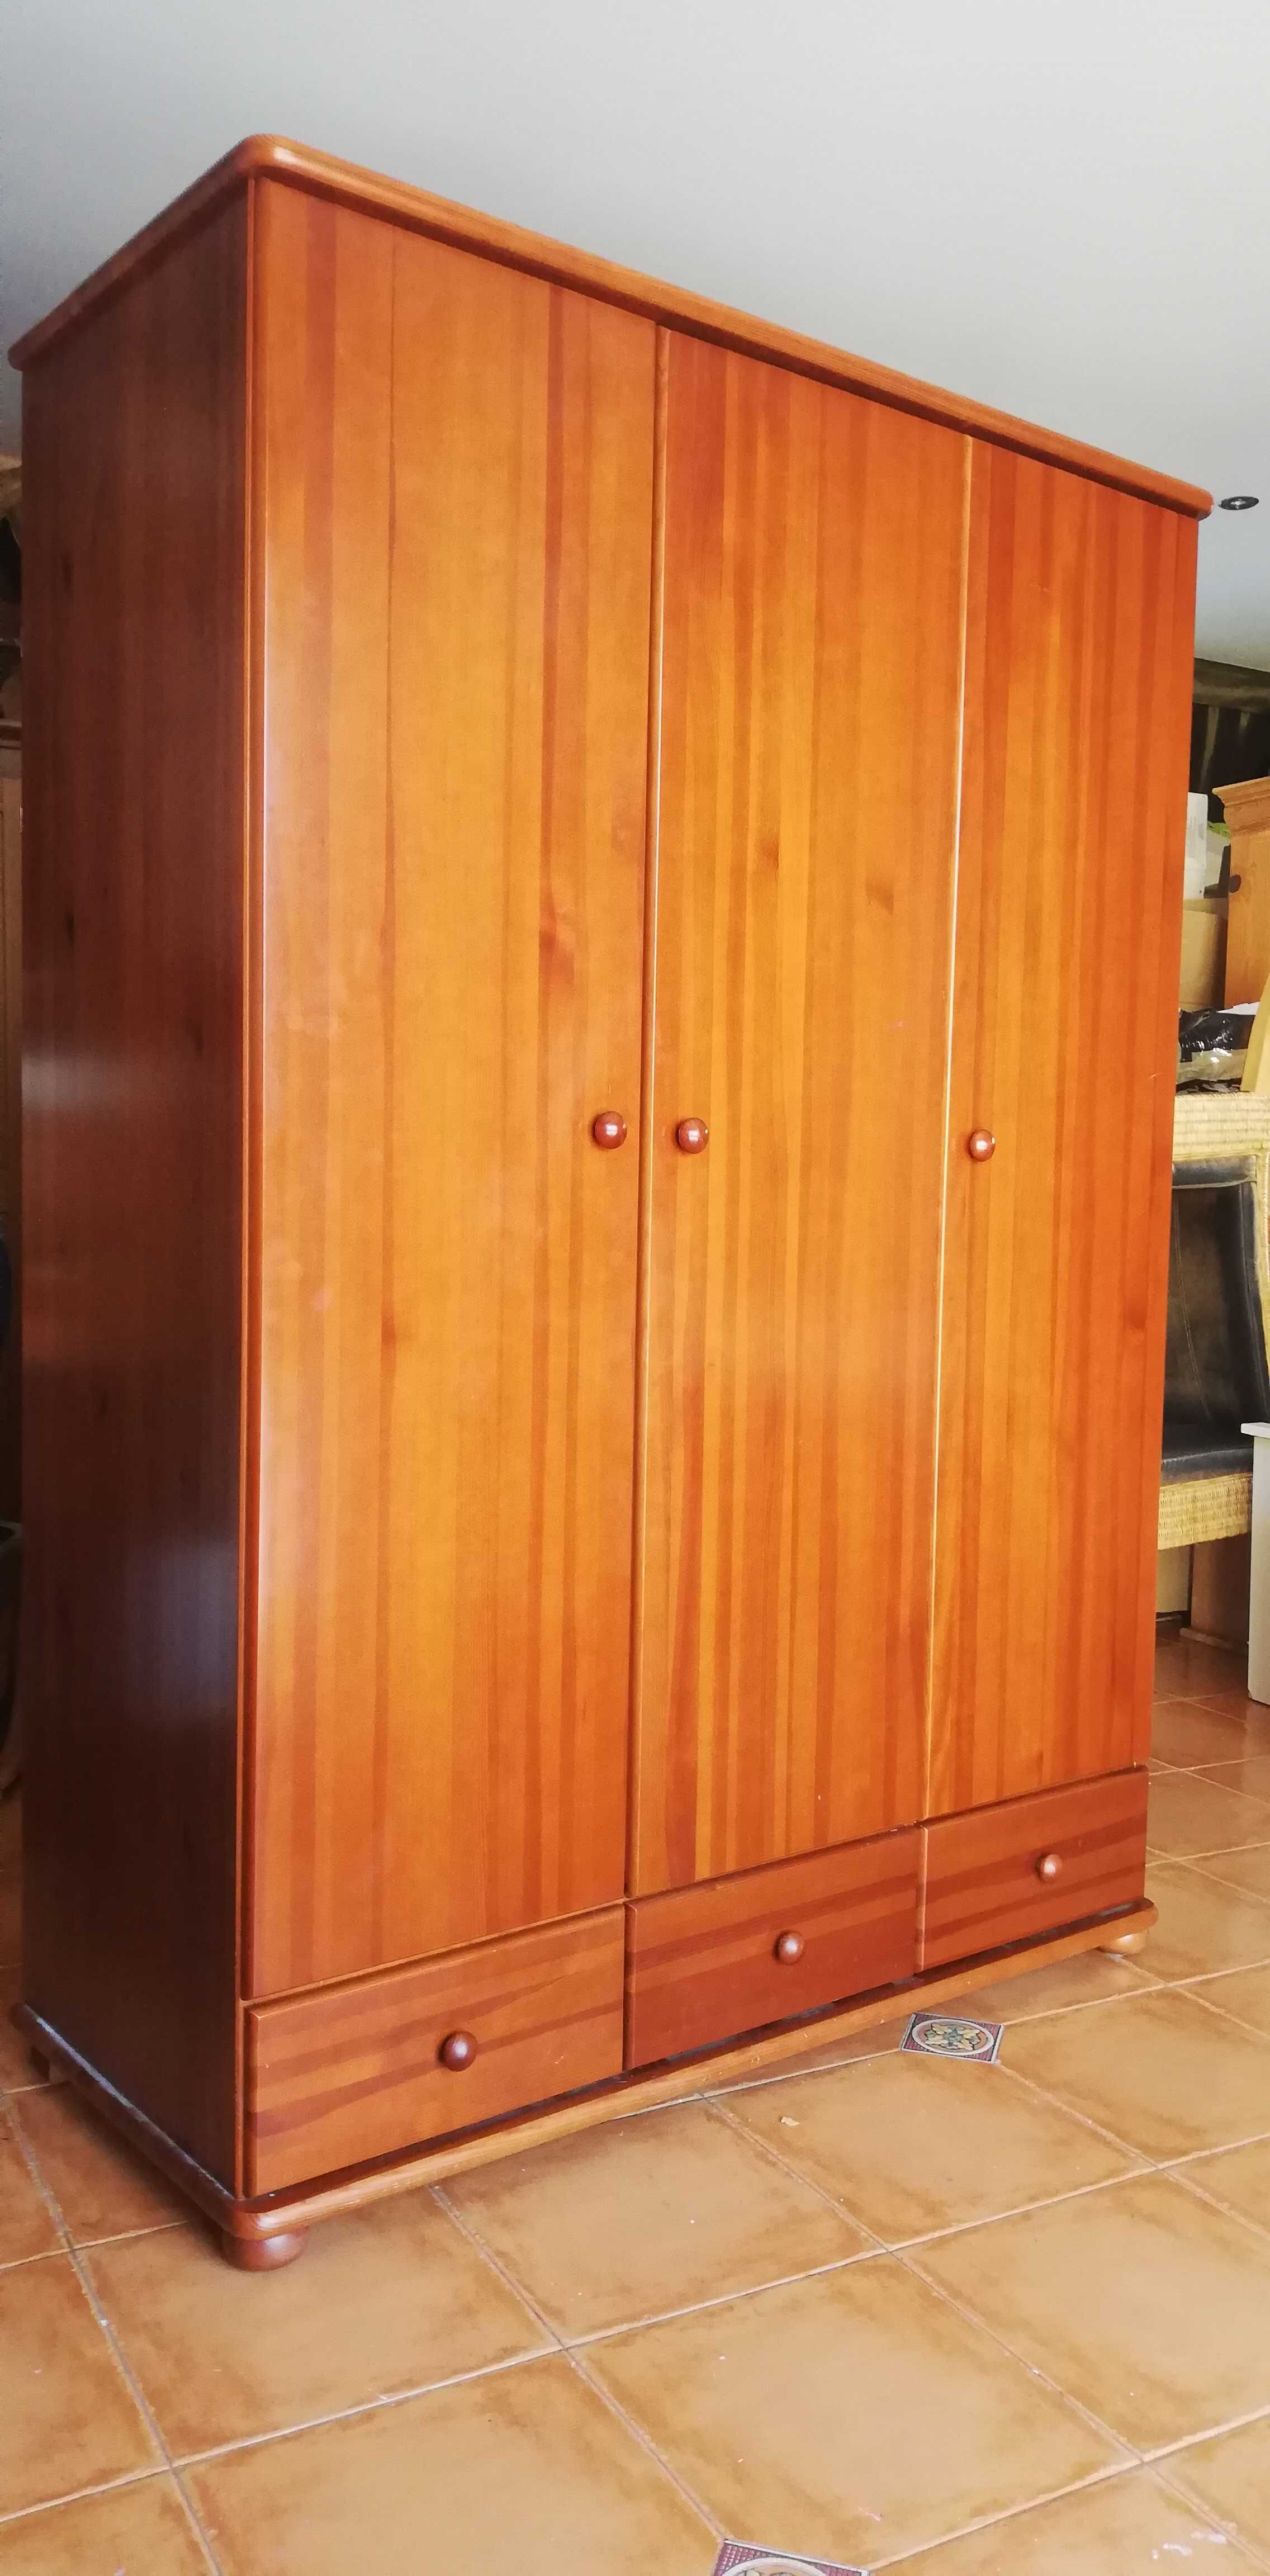 Szafa skalik trzy drzwiowa bieliźniarka drewniana sosnowa garderoba